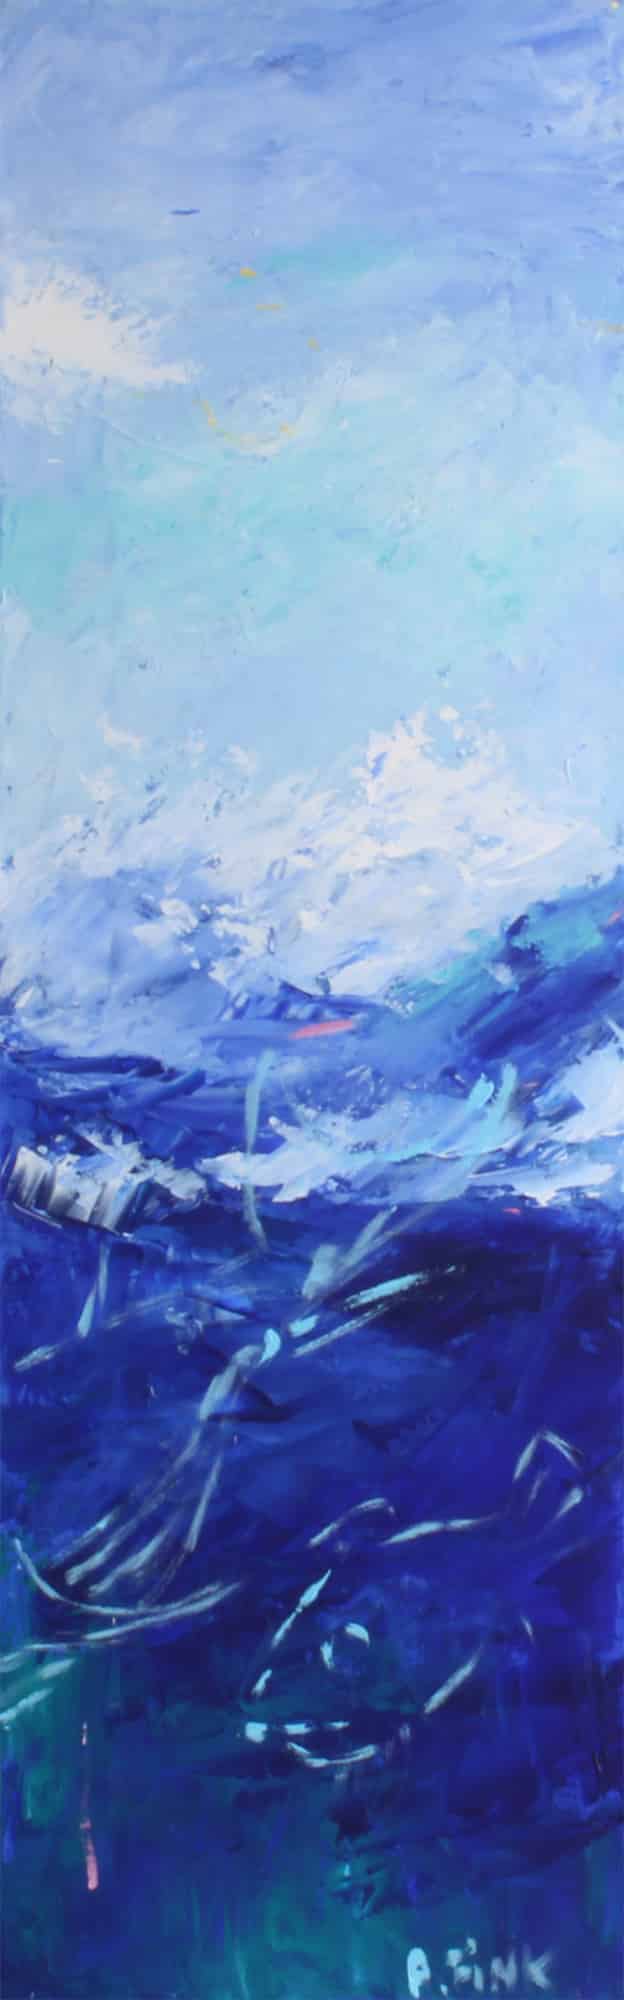 Oprørte vande (30 * 90 cm). Abstrakt maleri af Anne-Marie Fink